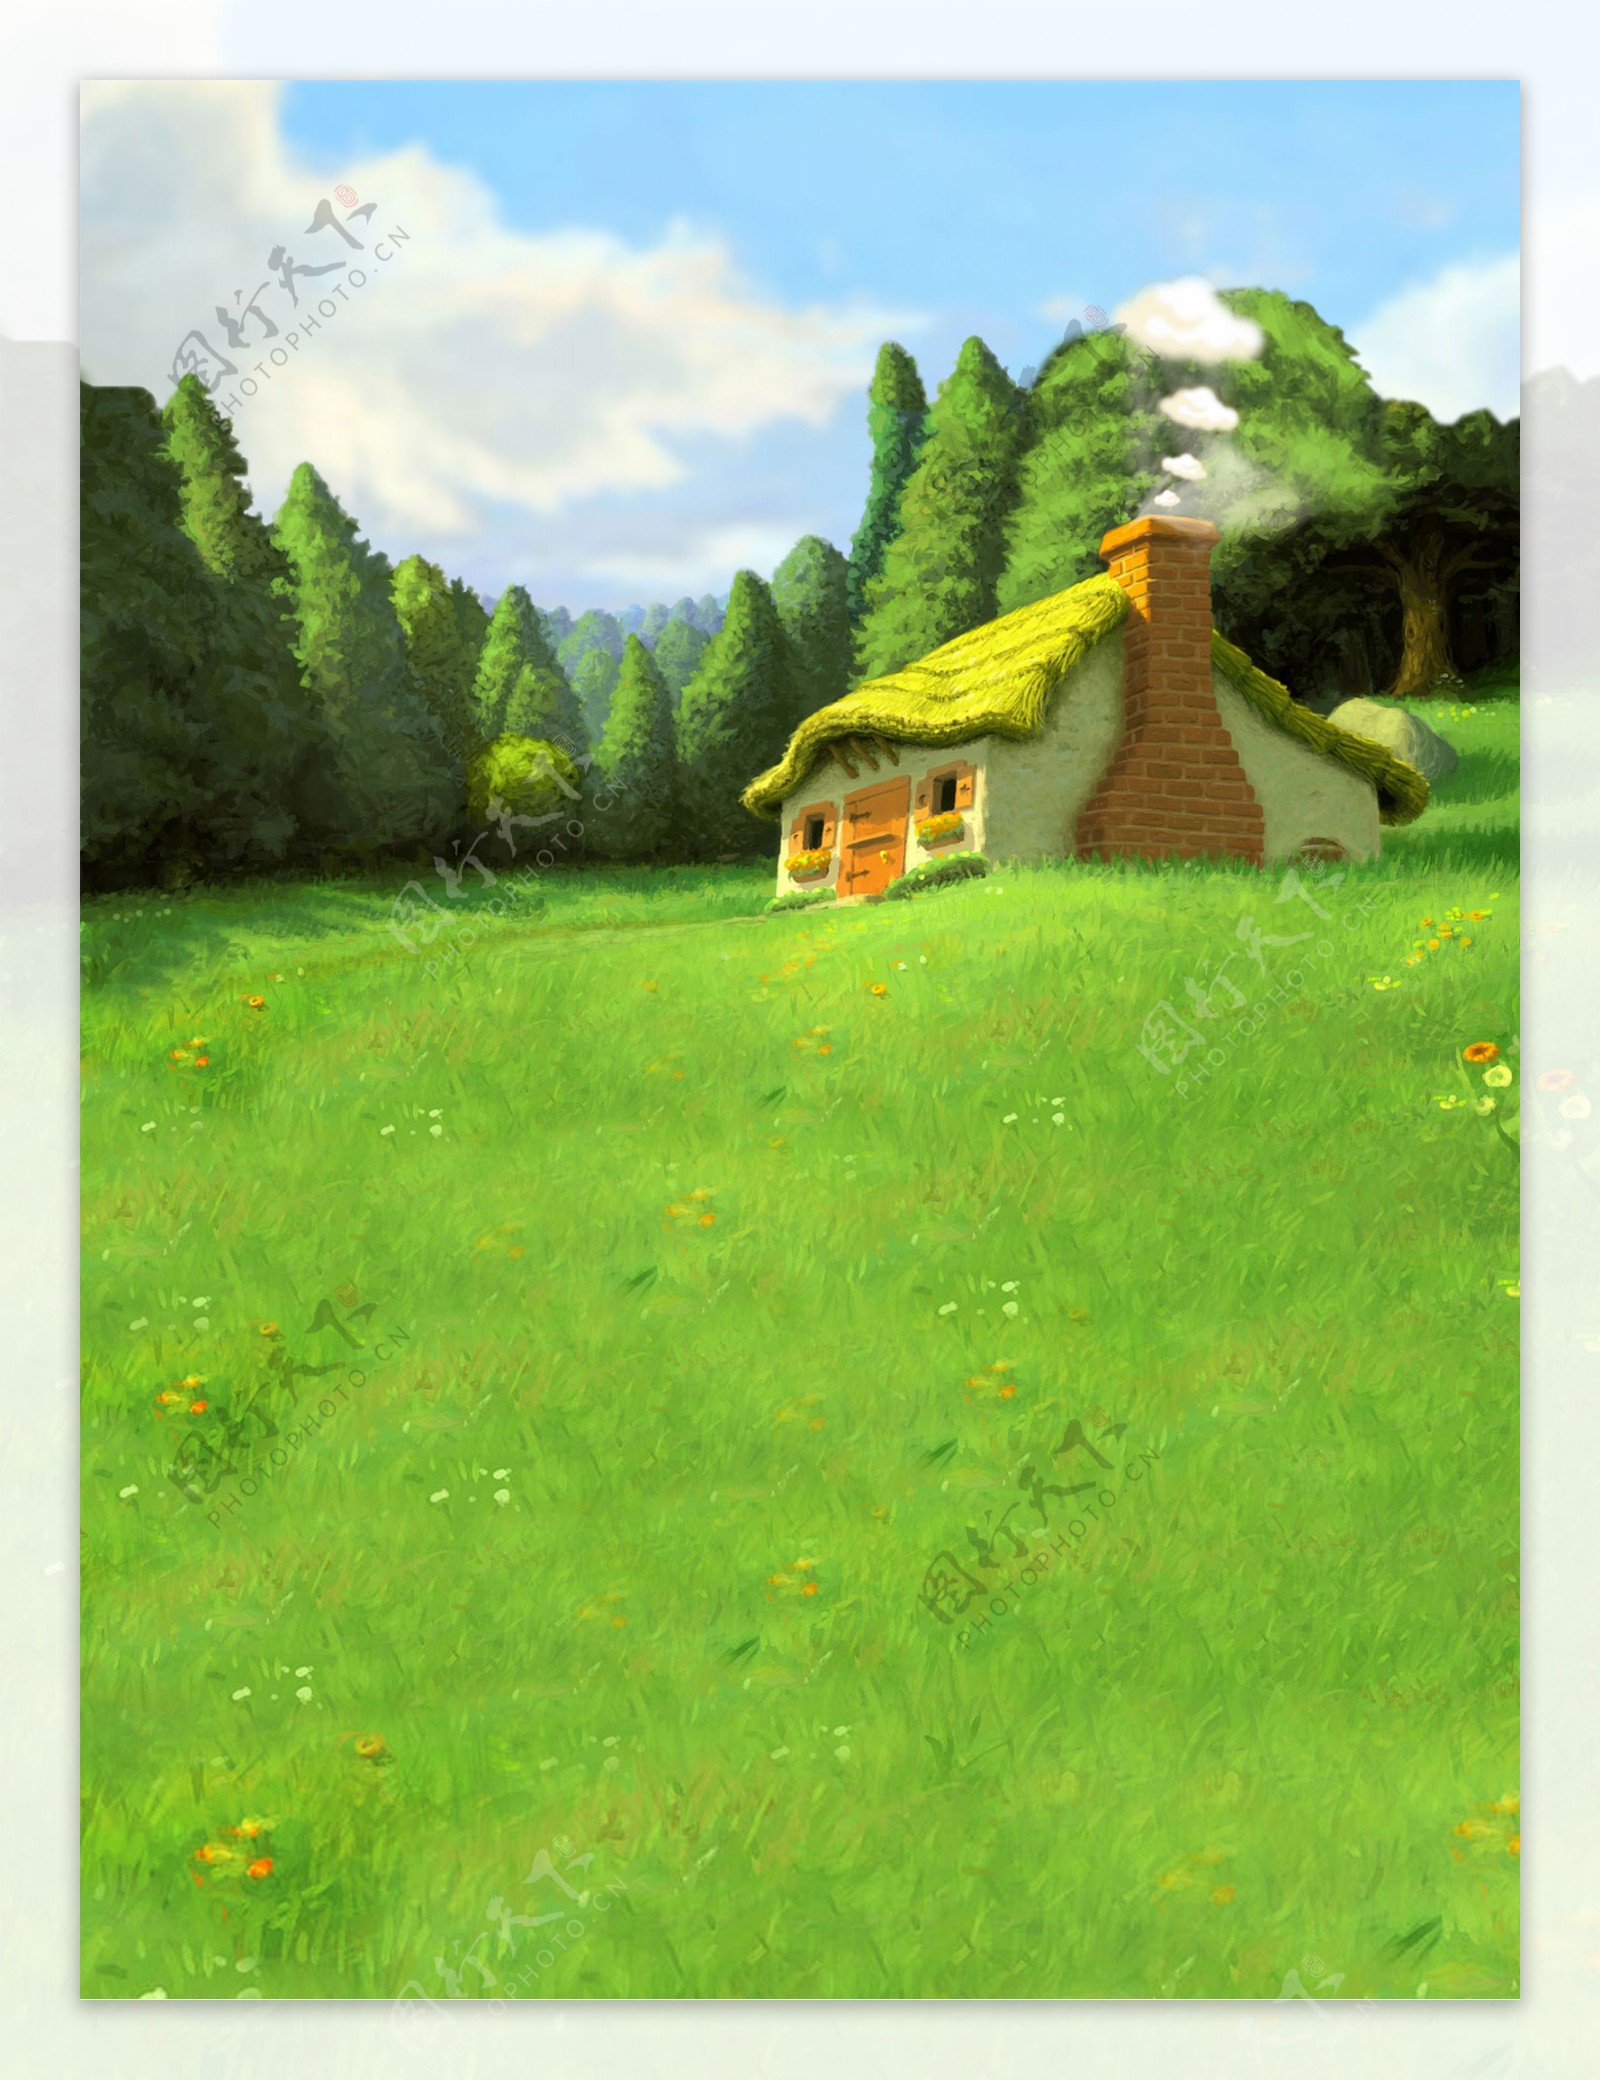 儿童摄影背景草地上的房子图片